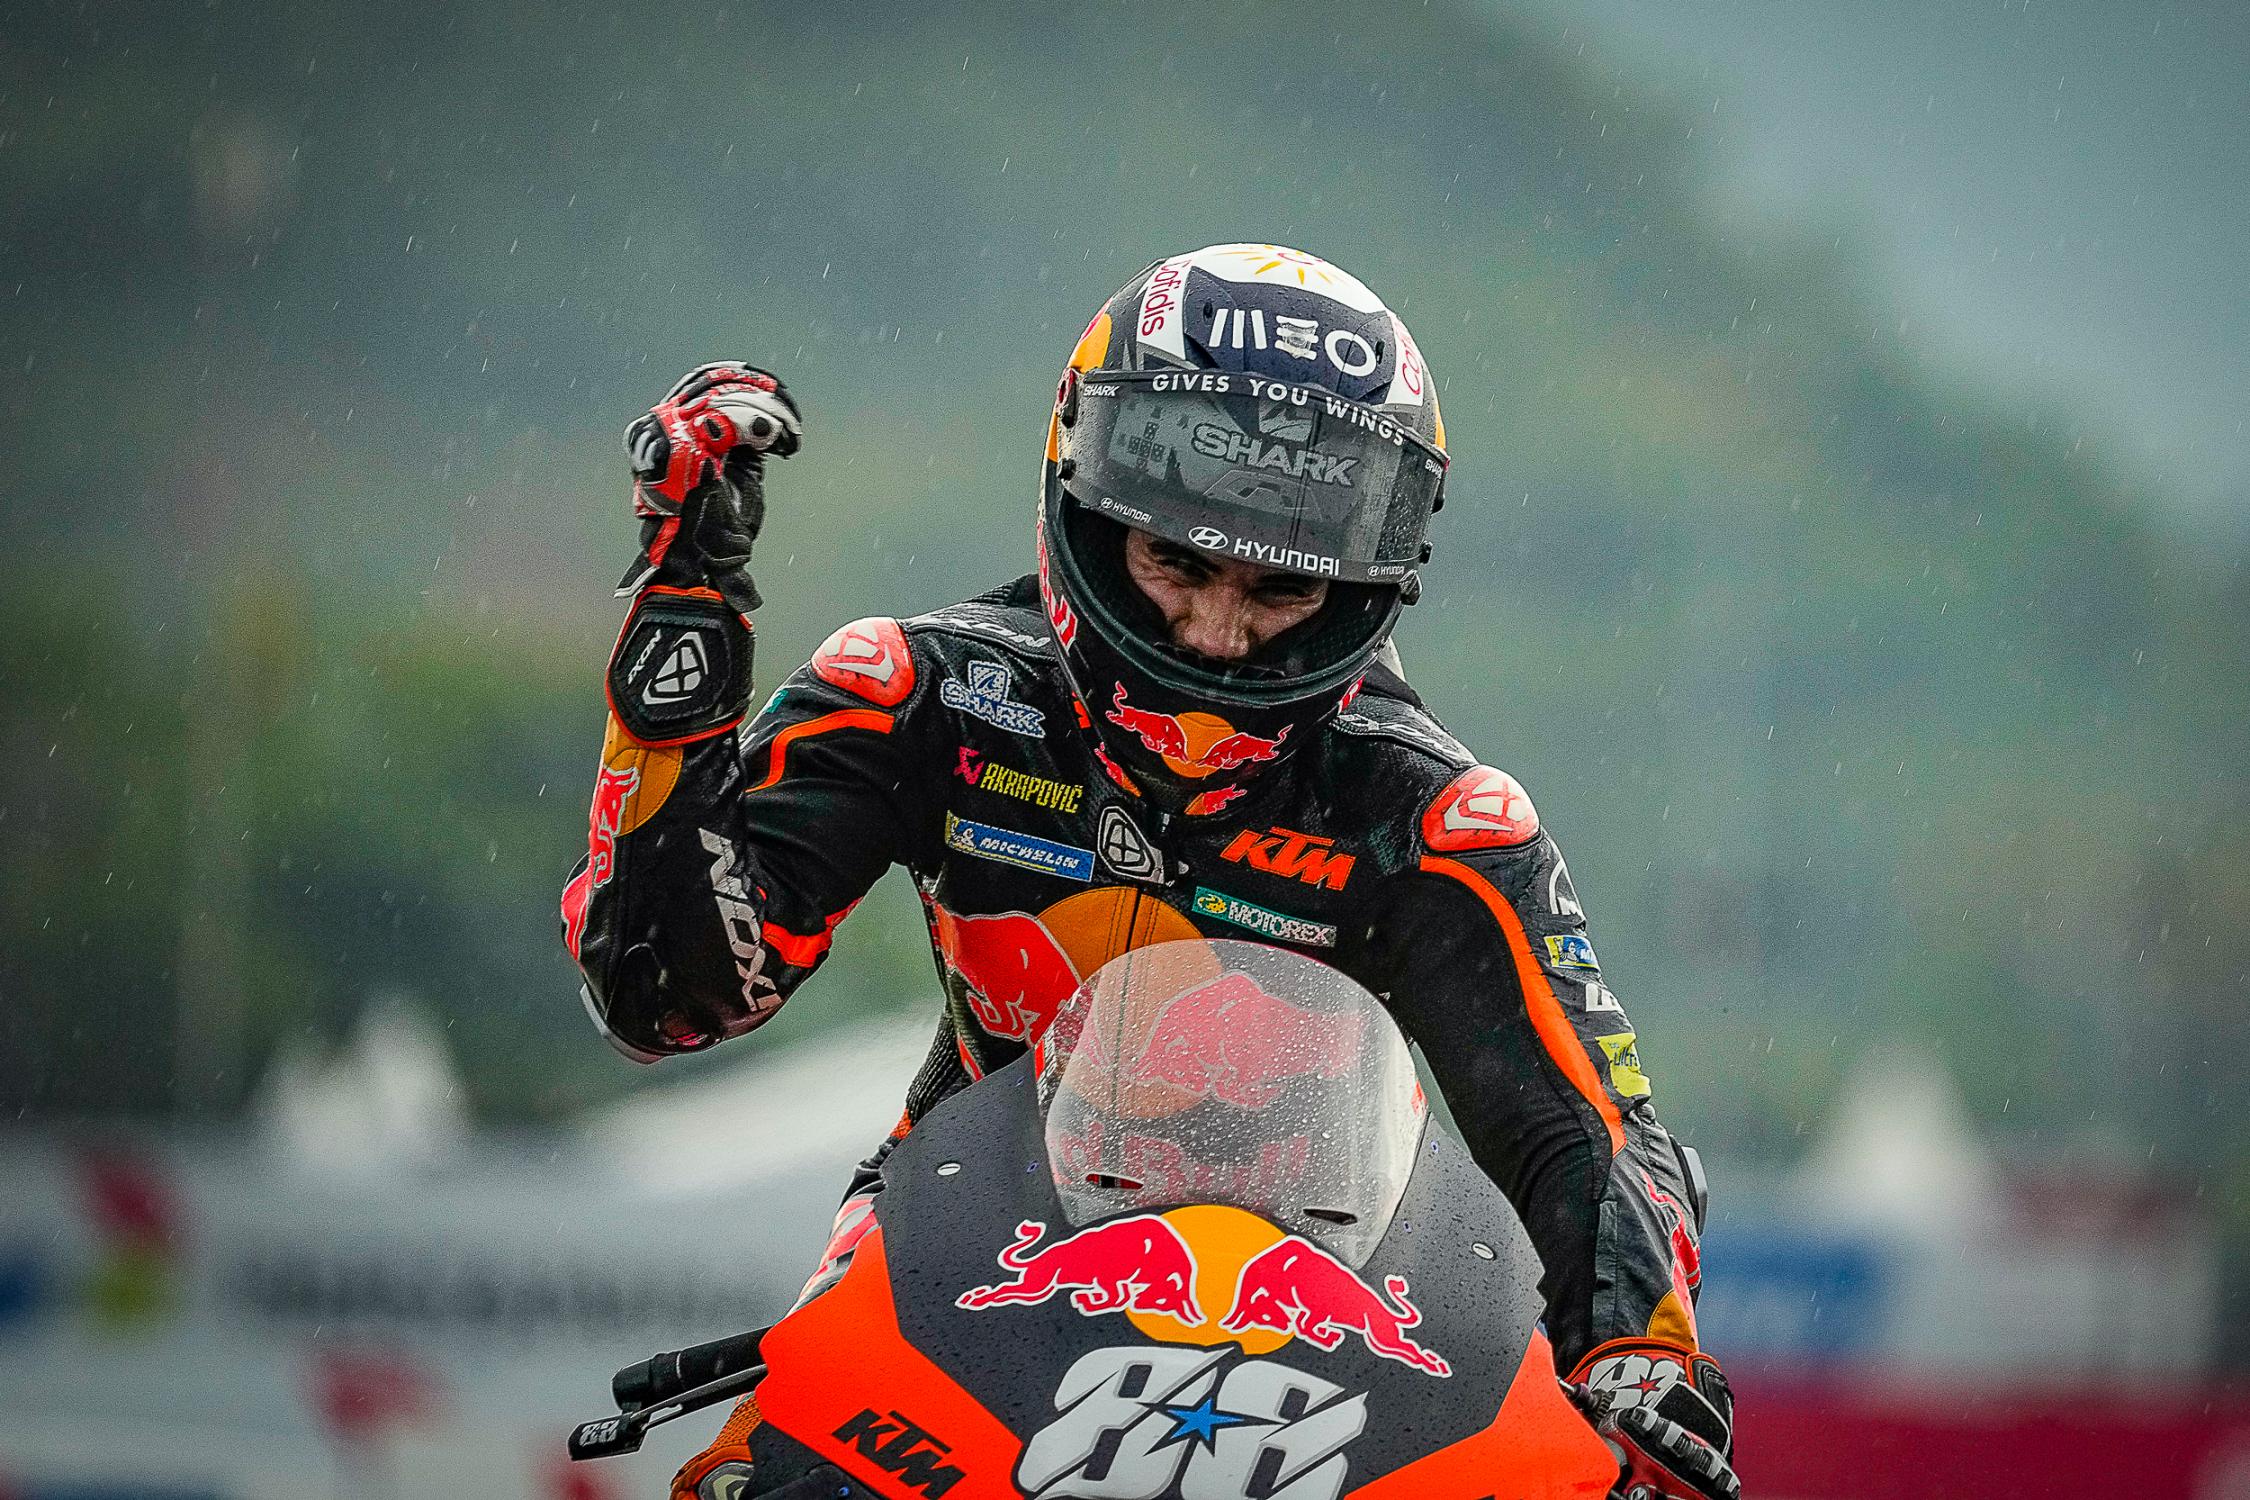 Ganador de la carrera, Miguel Oliveira/ Fuente: motogp.com